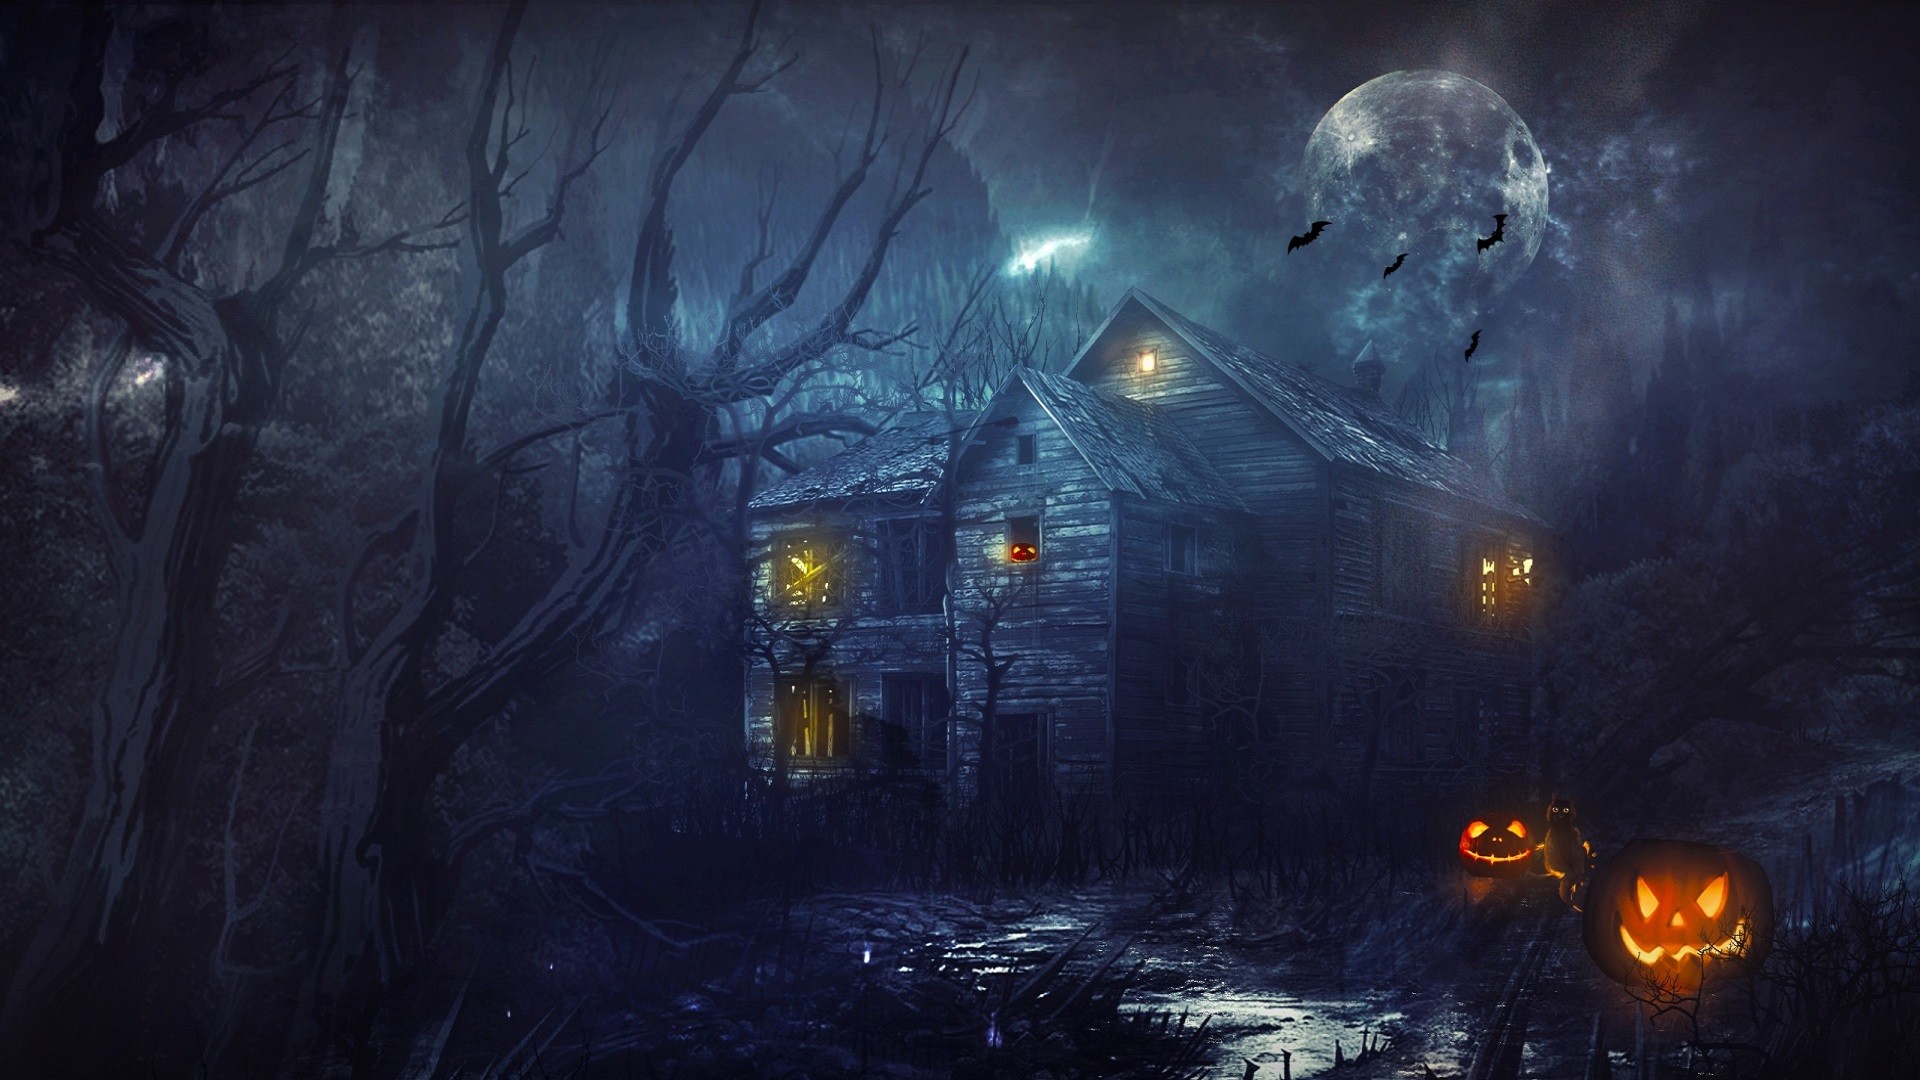 1920x1080 desktop background halloween pictures ; Animated-Halloween-Backgrounds-For- Desktop-(